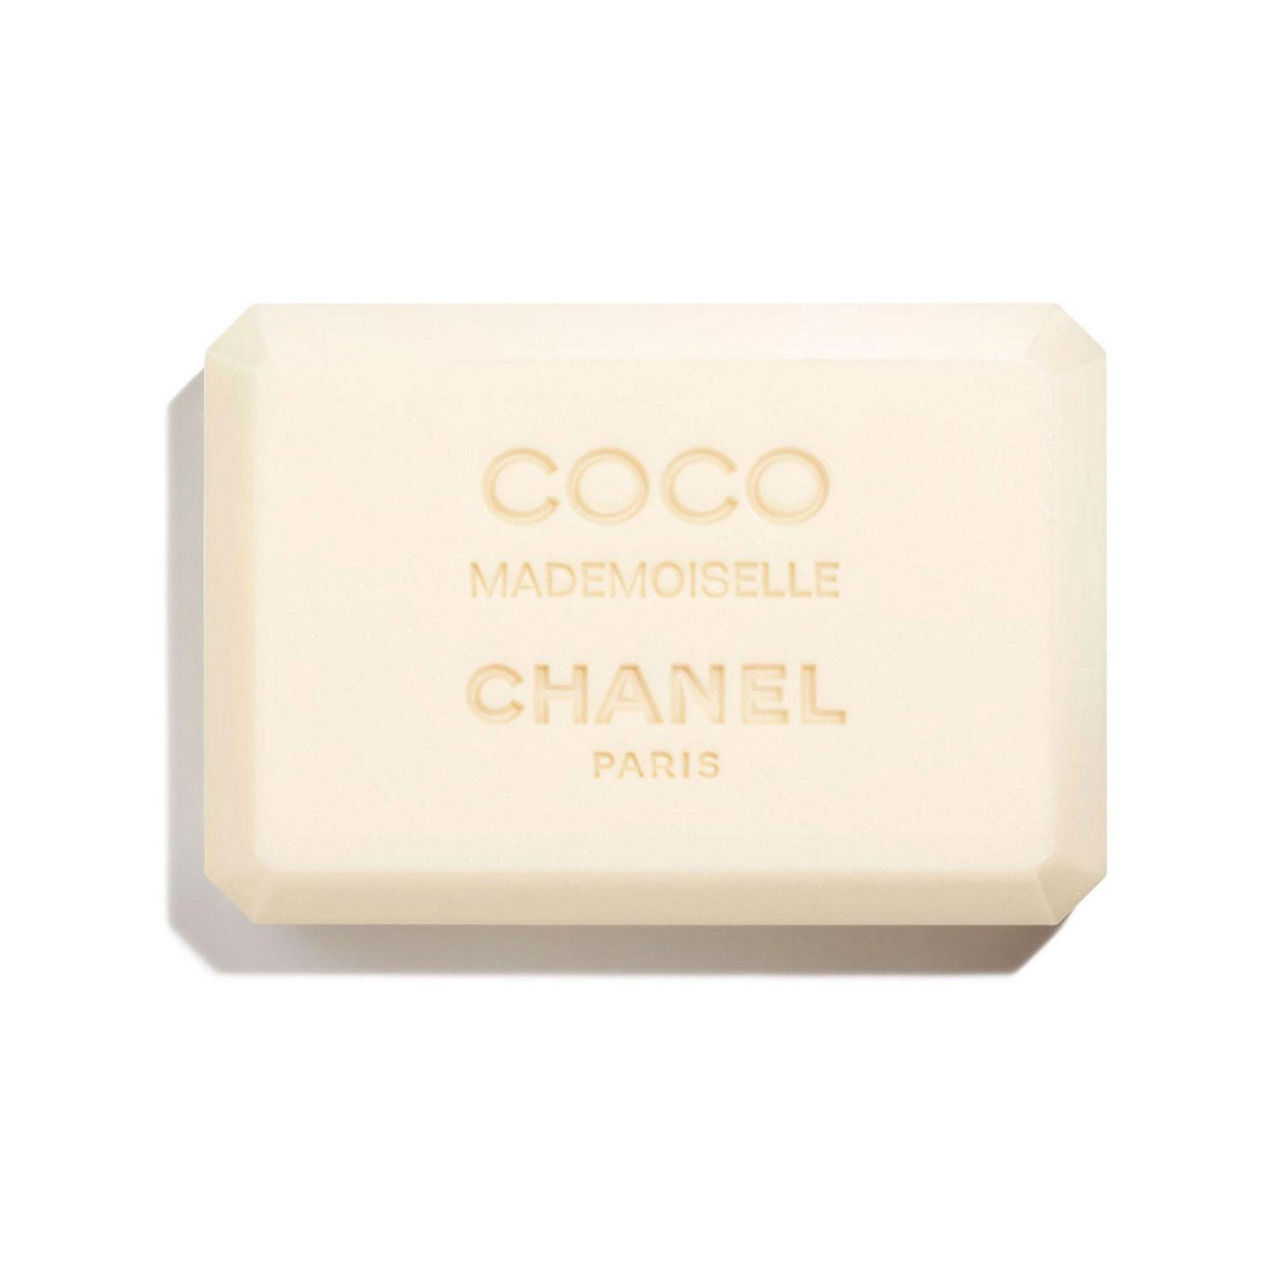 CHANEL Gentle Perfumed Soap